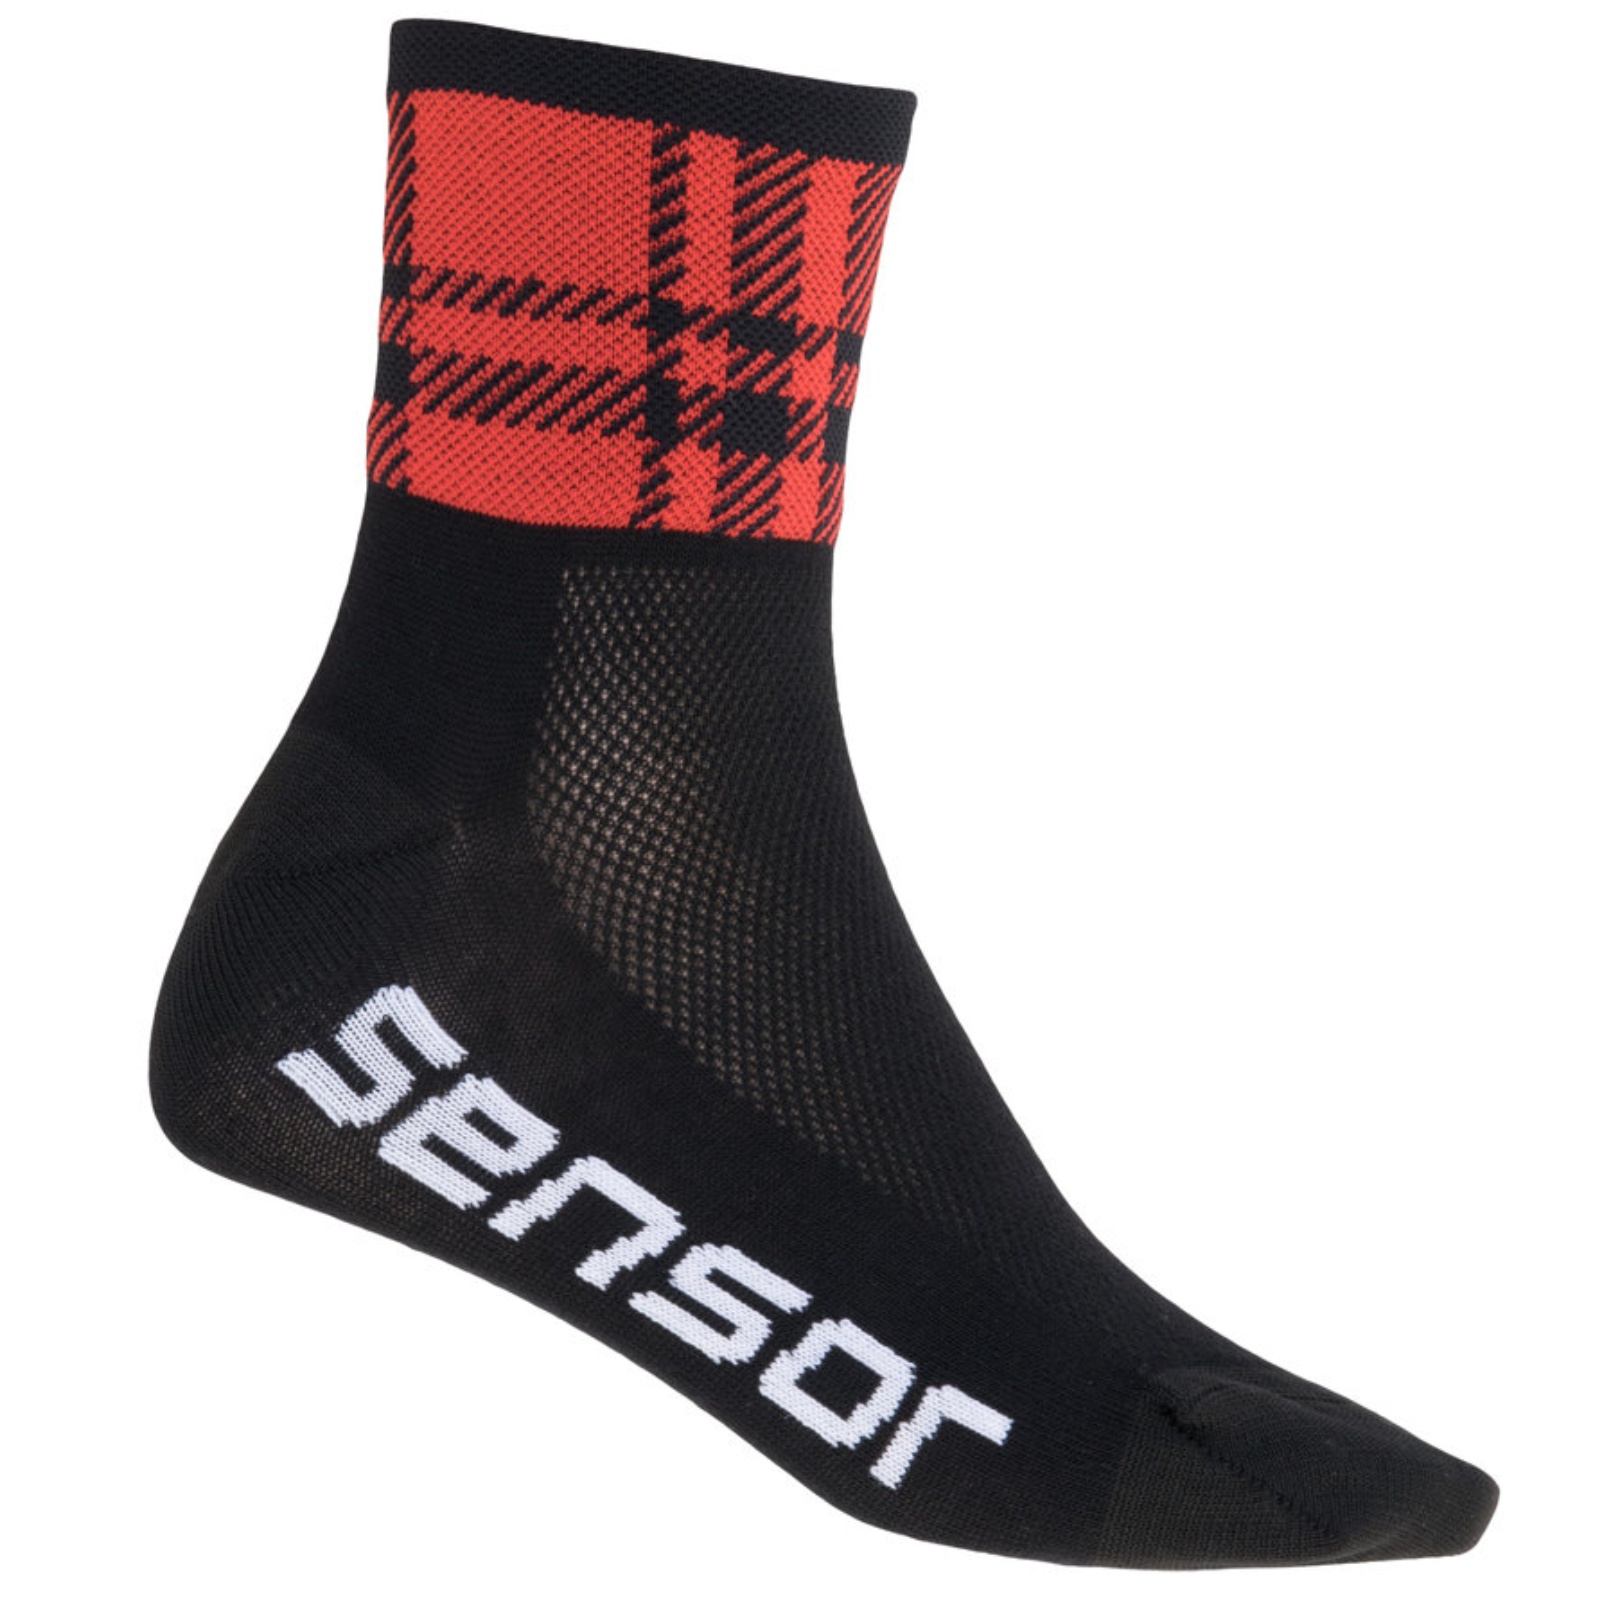 Sensor ponožky RACE SQUARE černá červená-9-11